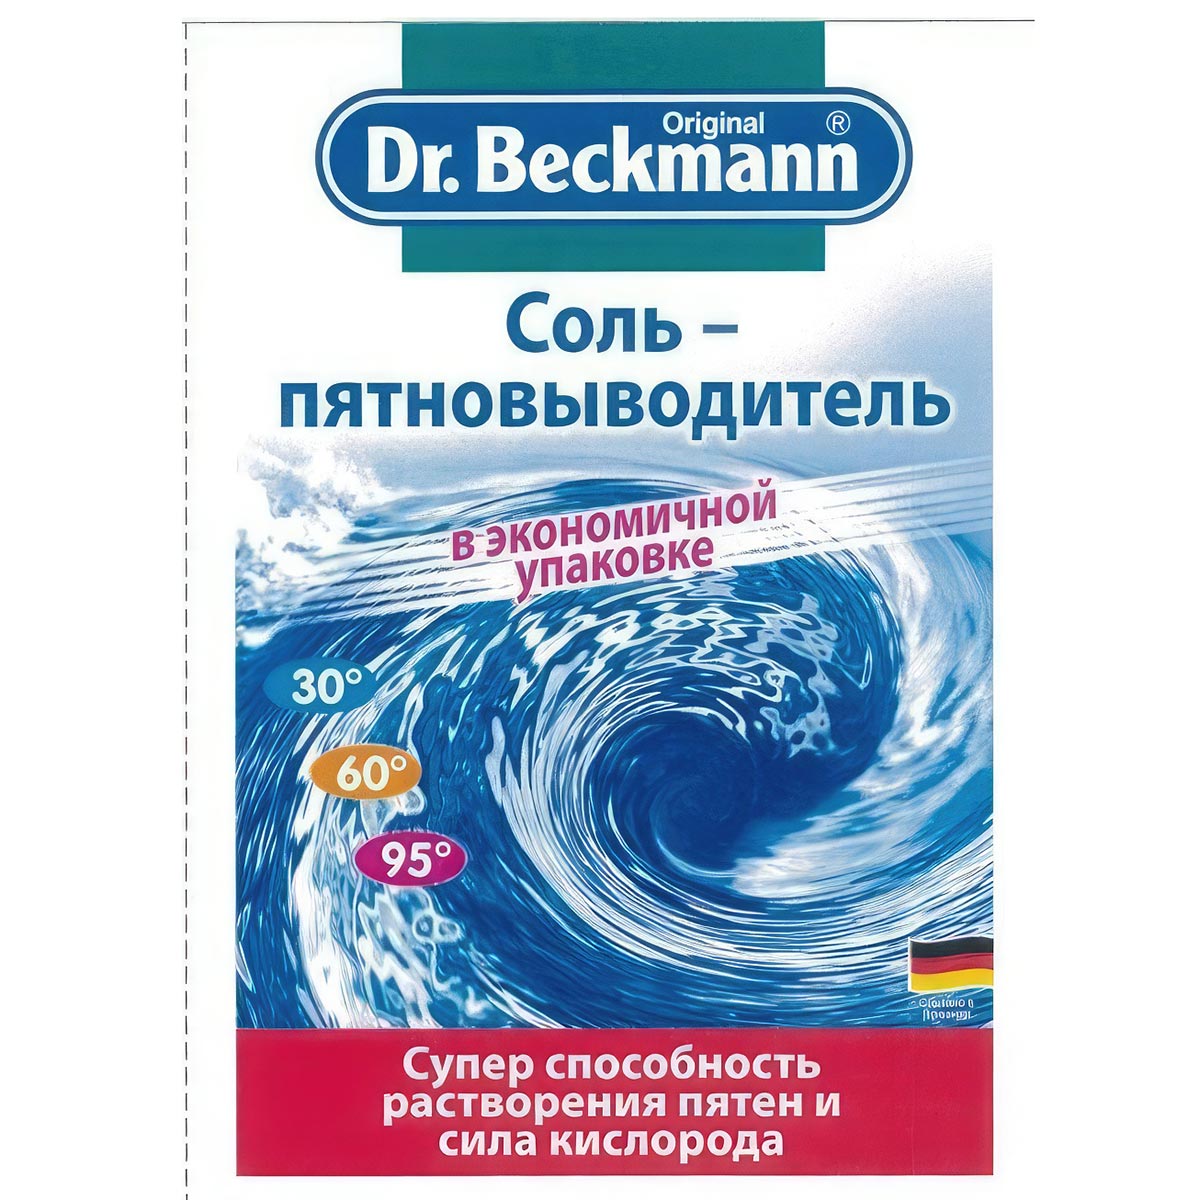 Соль пятновыводитель Dr. Beckmann в экономичной упаковке, 80 гр мыло dr beckmann от пятен 100гр